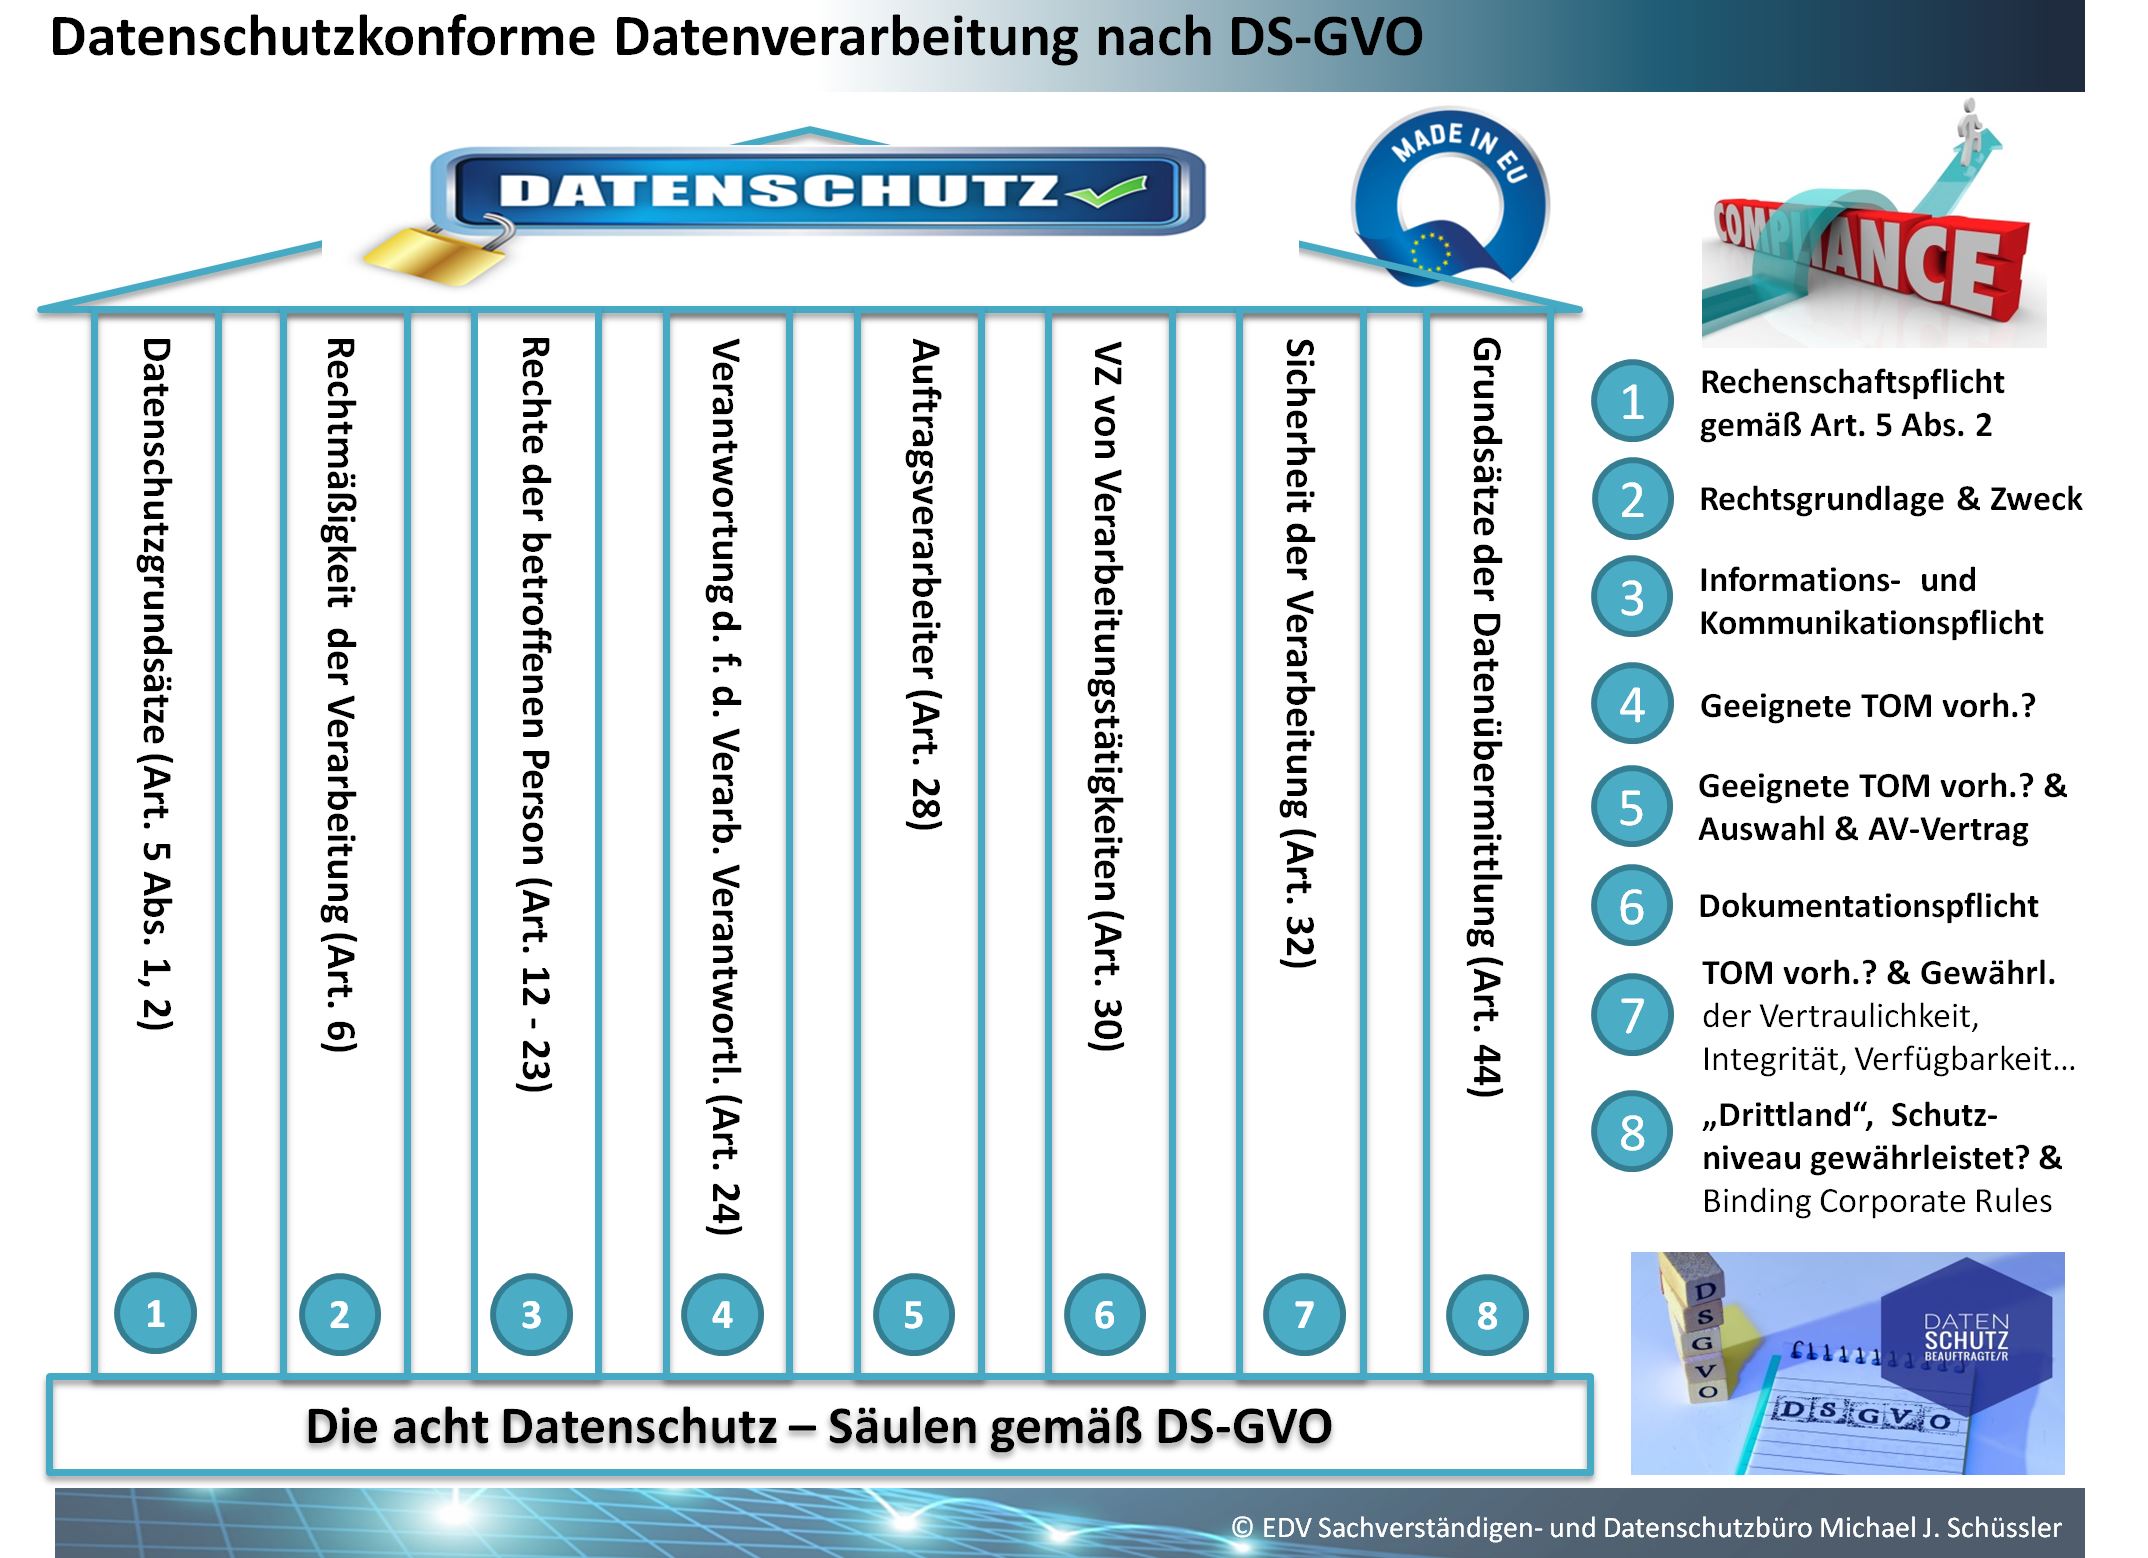 Datenschutzkonforme Datenverarbeitung nach DS-GVO